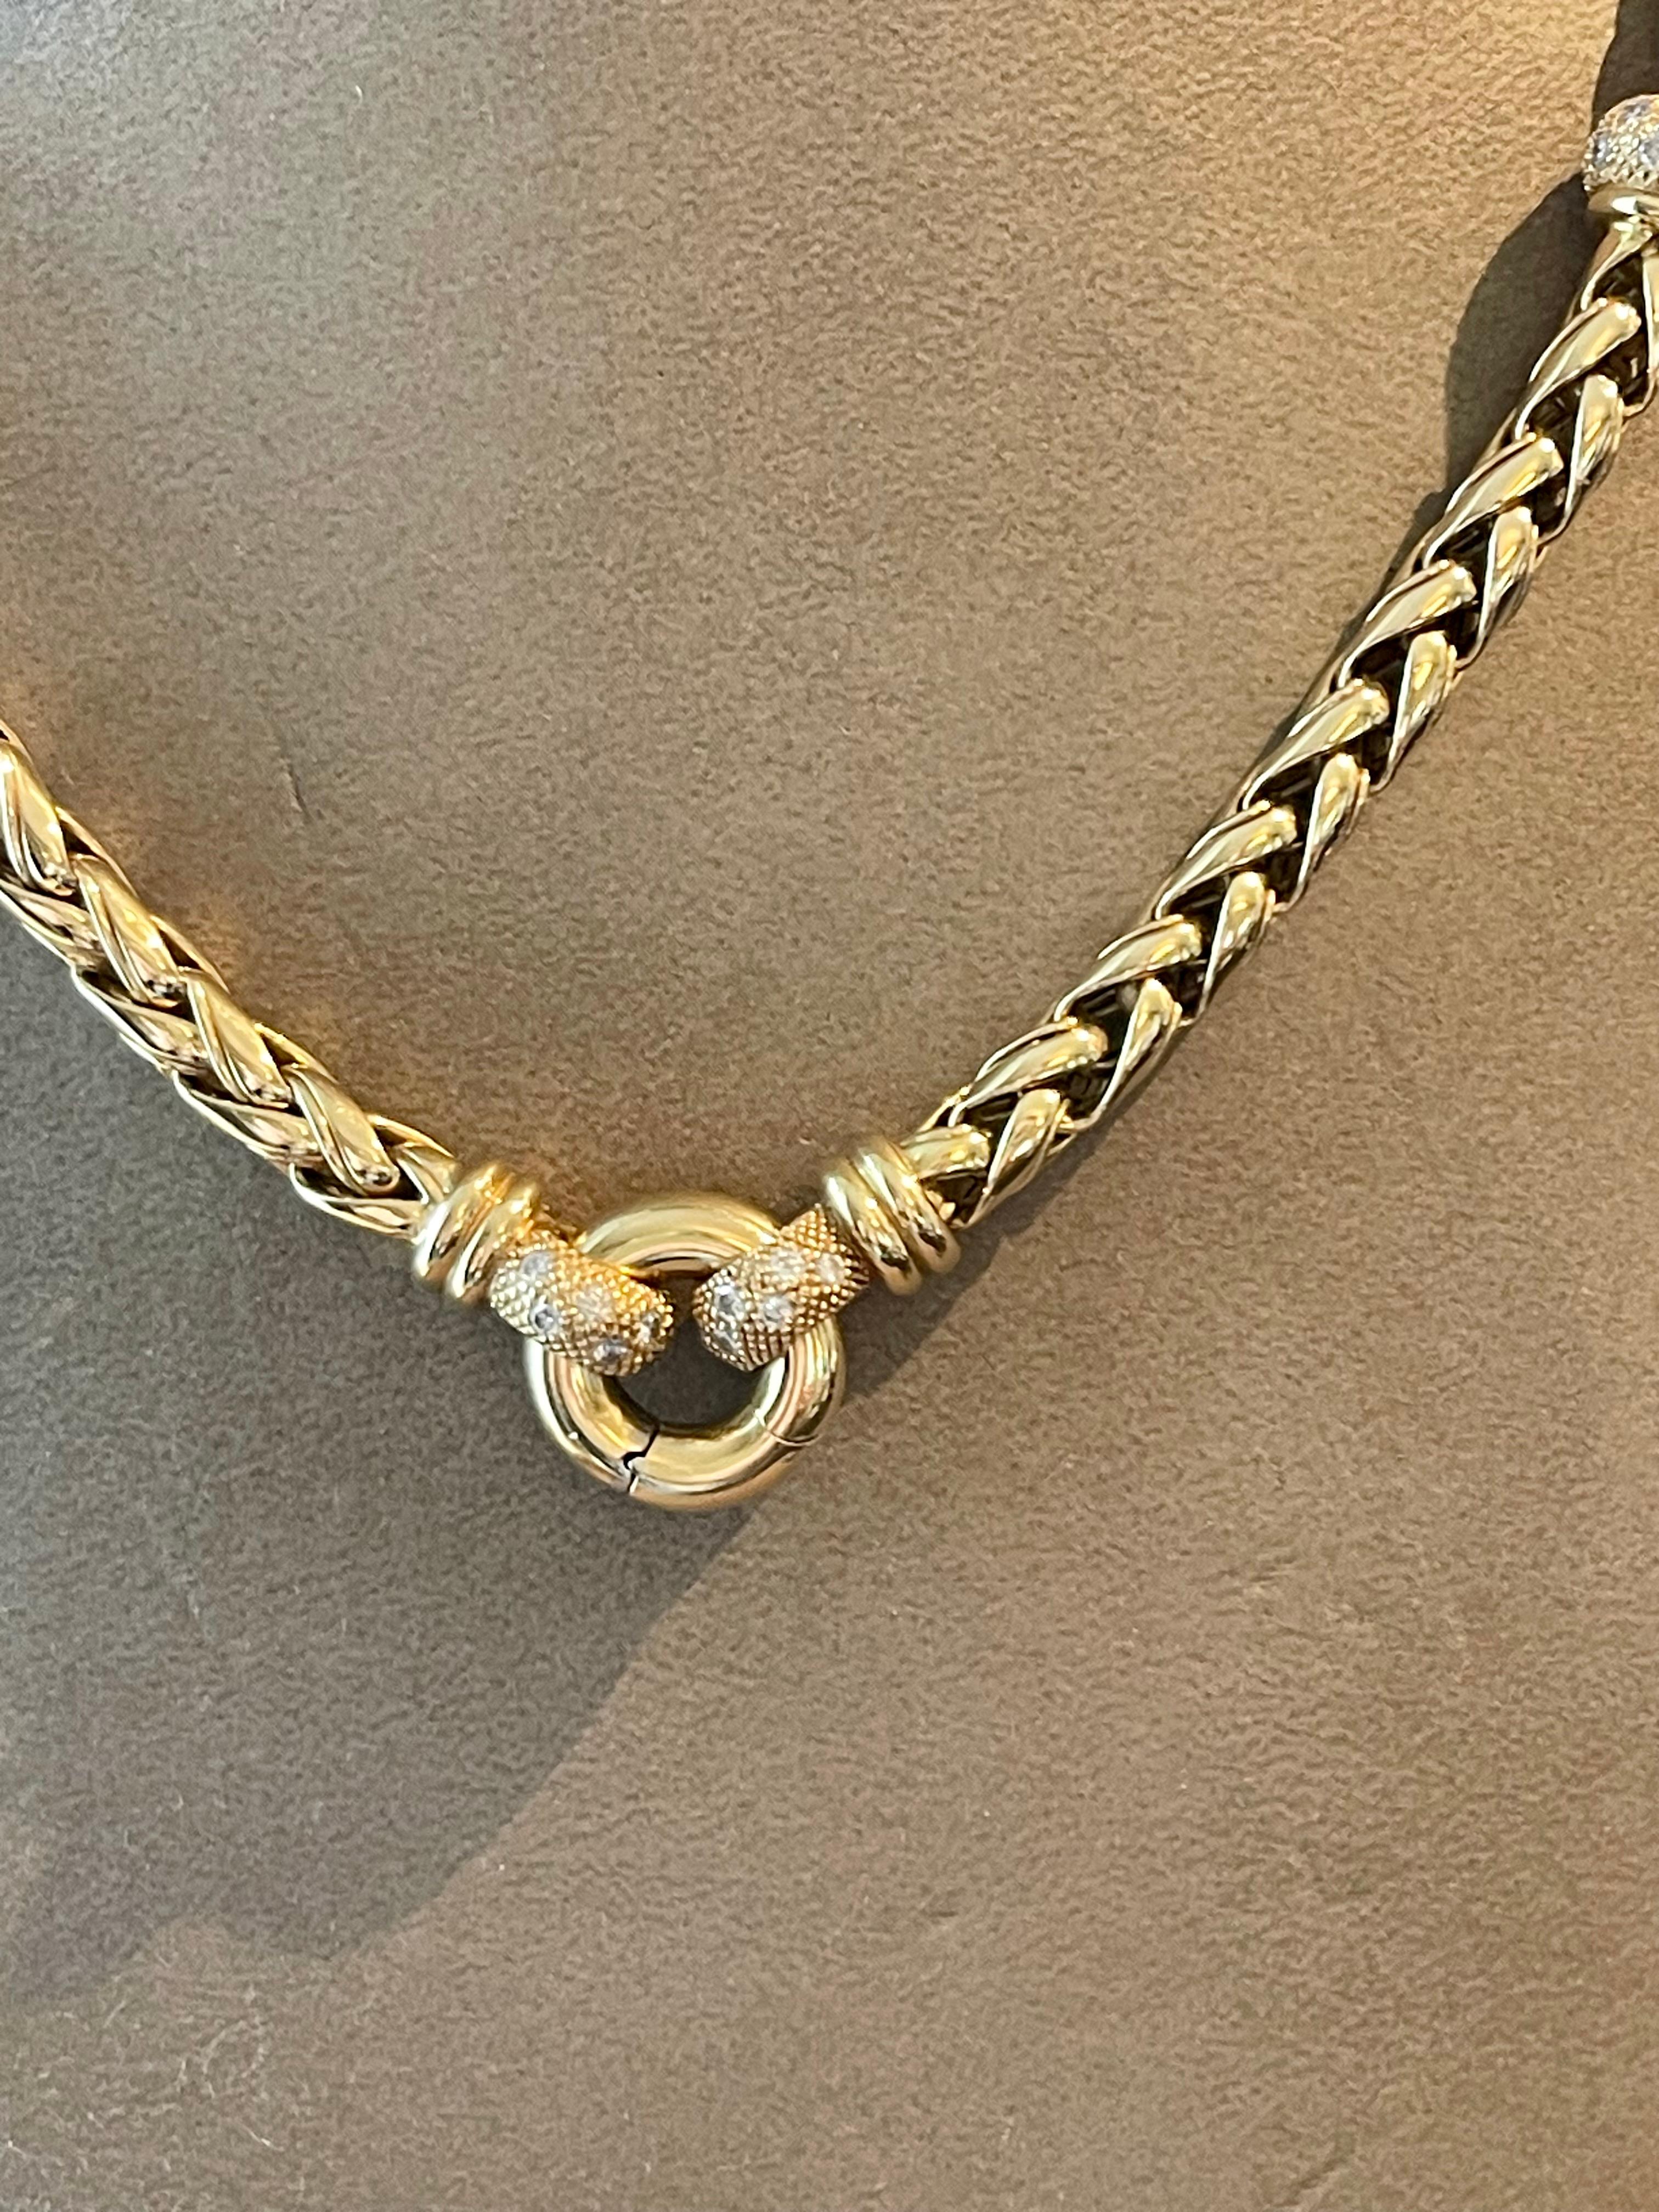 Un collier de corde fantaisie intemporel en or jaune 18 K fait à la main et serti de petits diamants. Longueur : 45 cm. Poids : 86,48 grammes.
QUESTIONS ?  N'hésitez pas à nous contacter pour toute autre question.  Nous sommes là pour vous faire